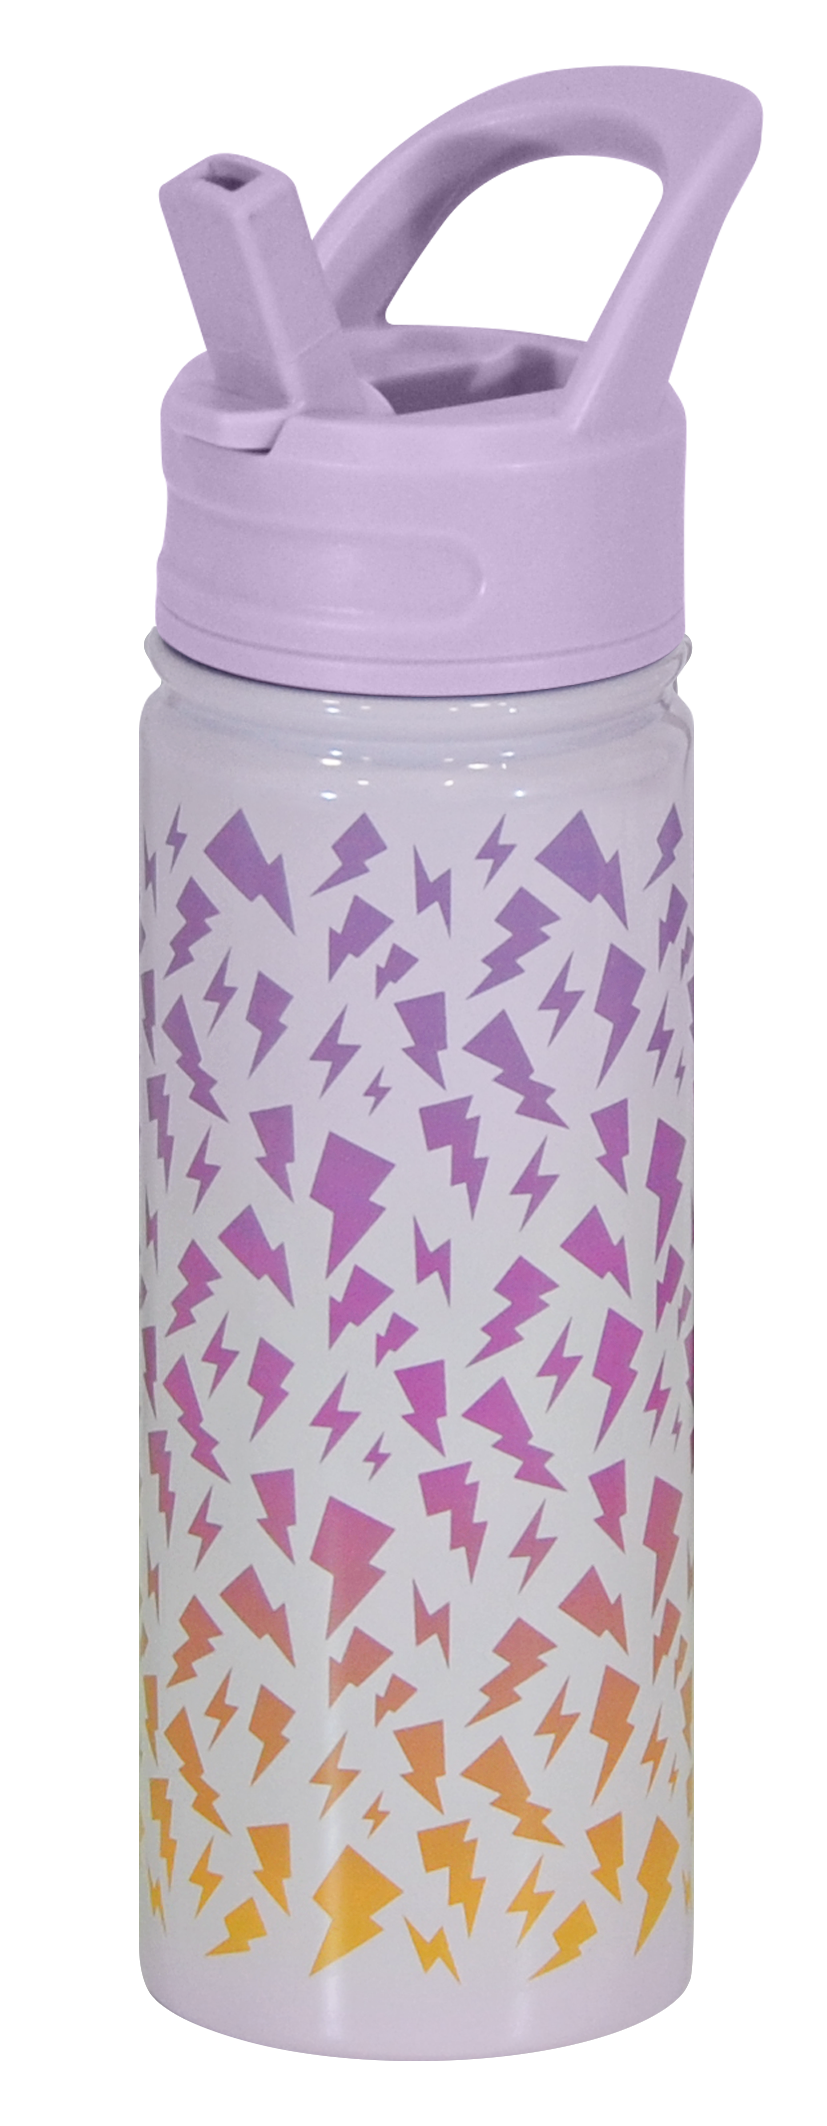 Thermal Bottle 500ml - Purple